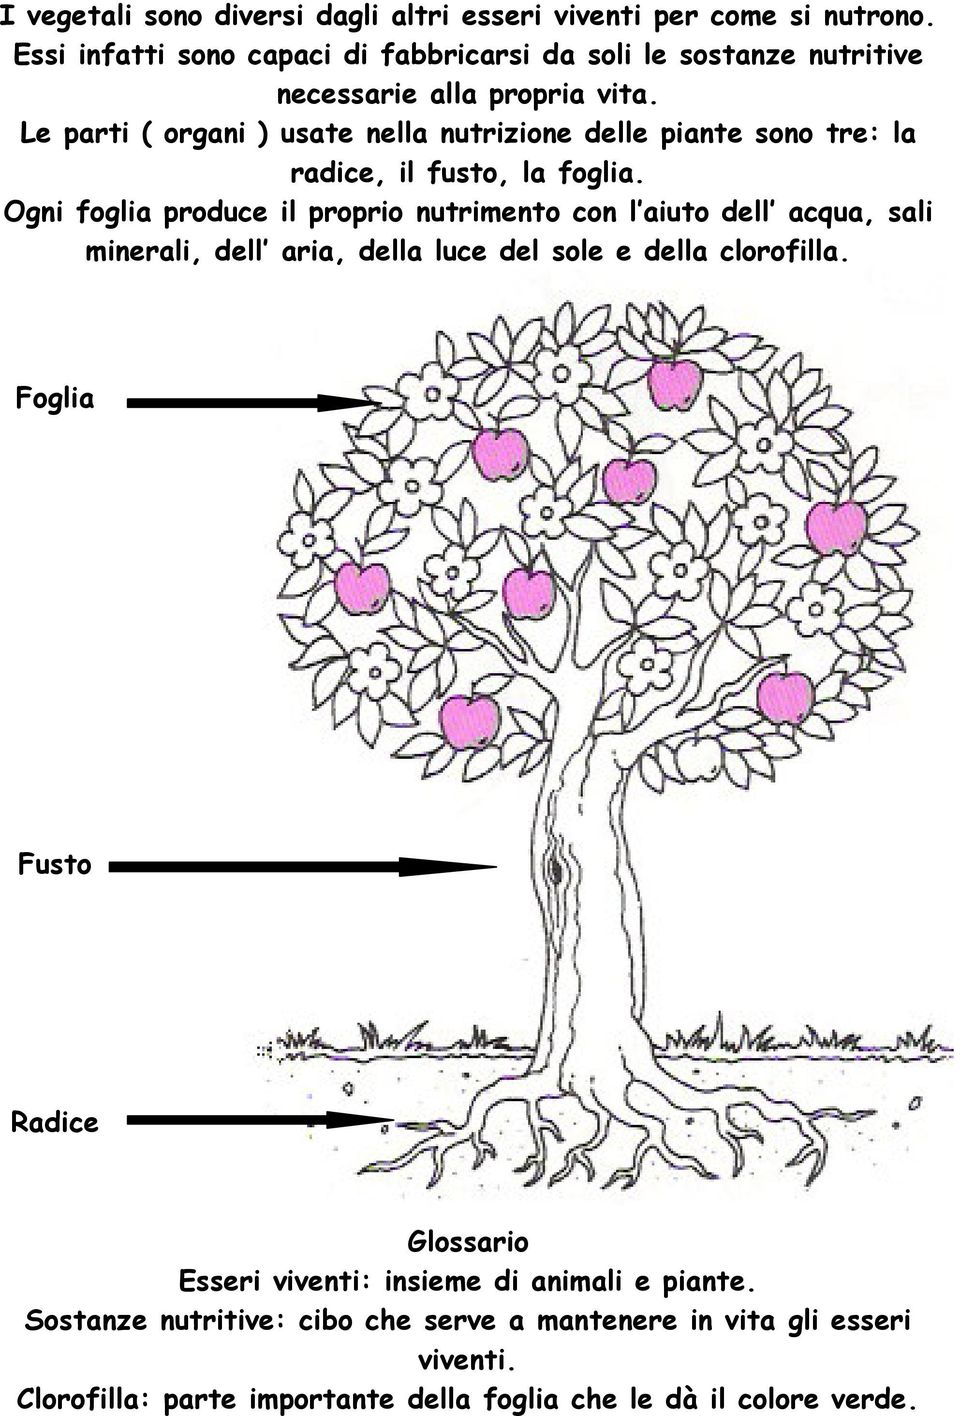 Le parti ( organi ) usate nella nutrizione delle piante sono tre: la radice, il fusto, la foglia.